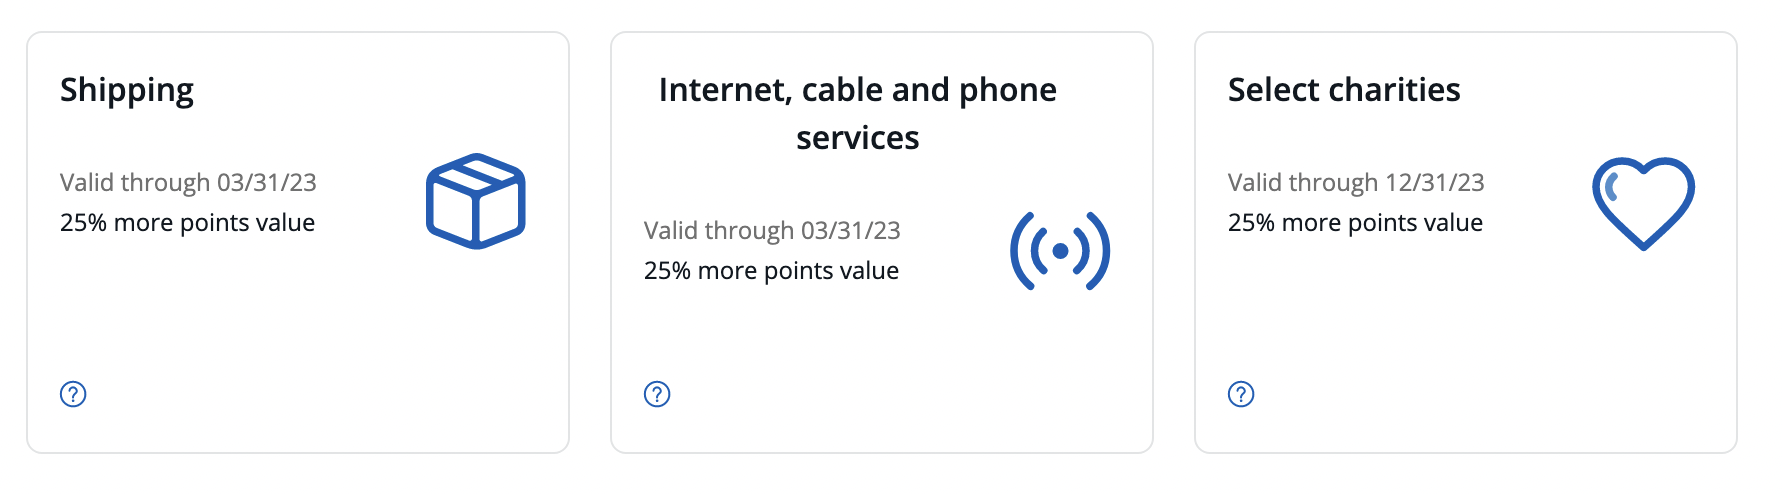 a screenshot of a phone service